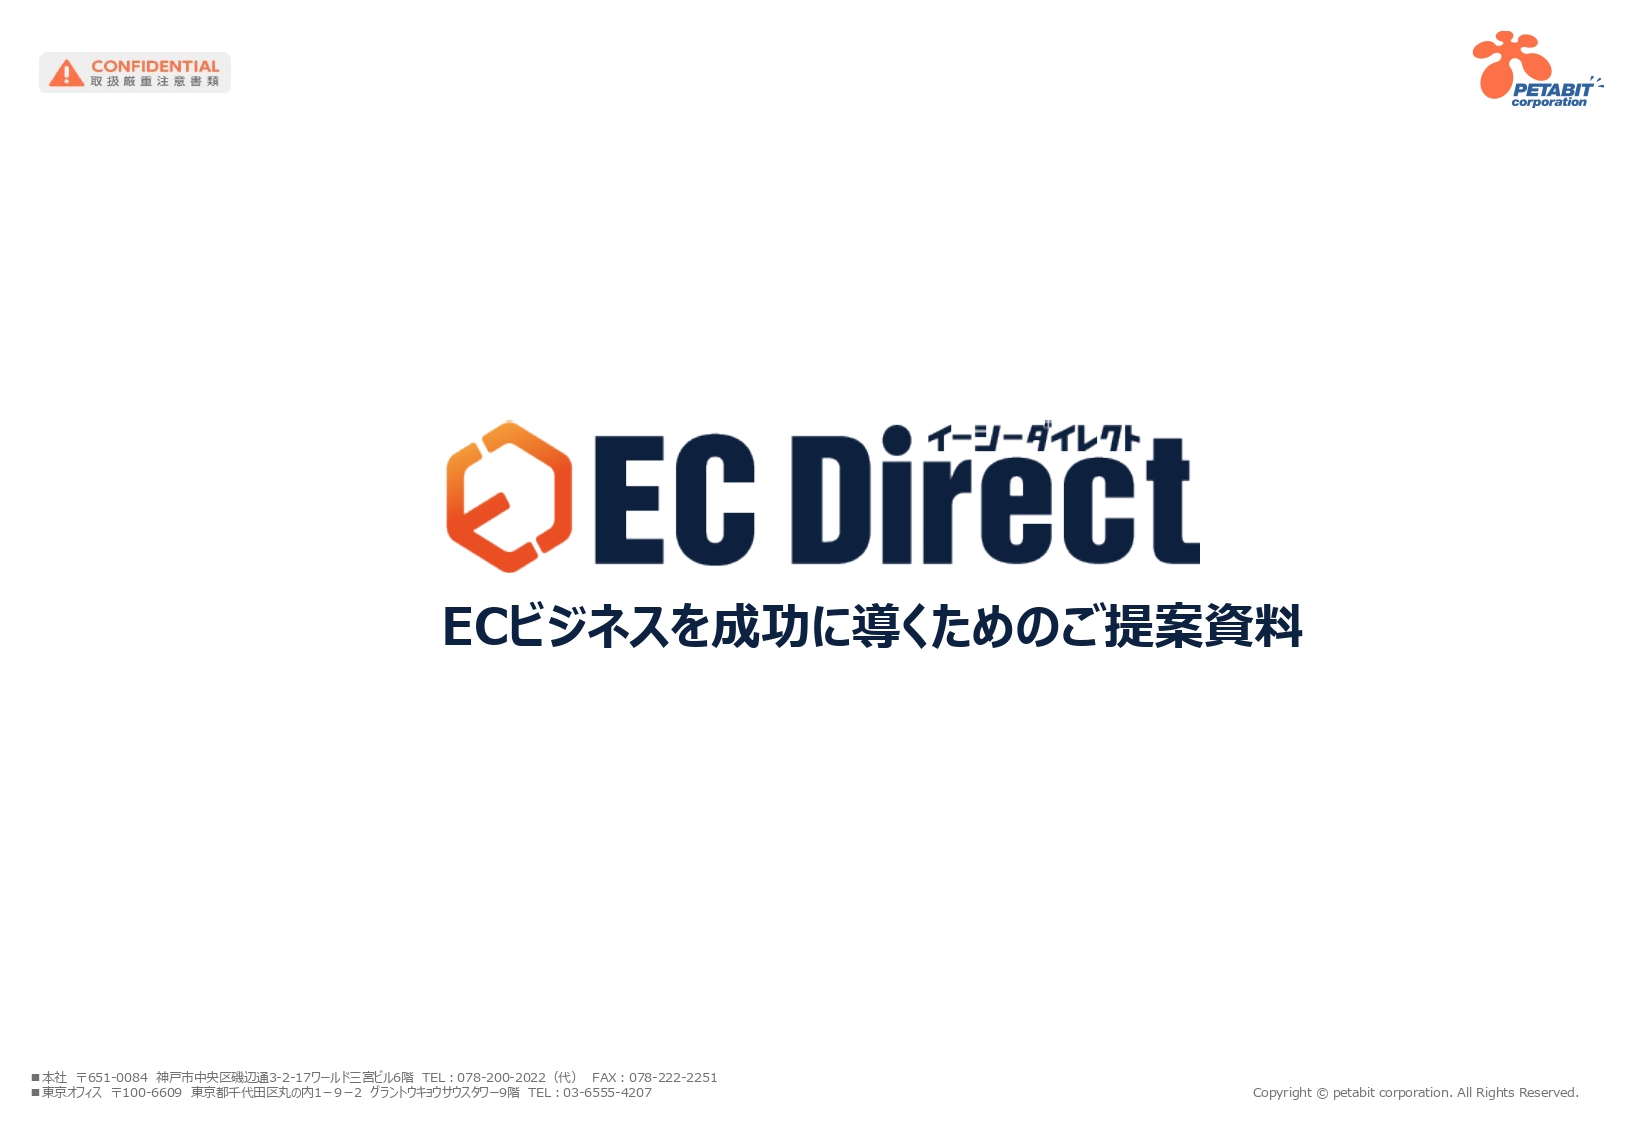 自社ECサイト『EC Direct2.0』ヘッドレス型